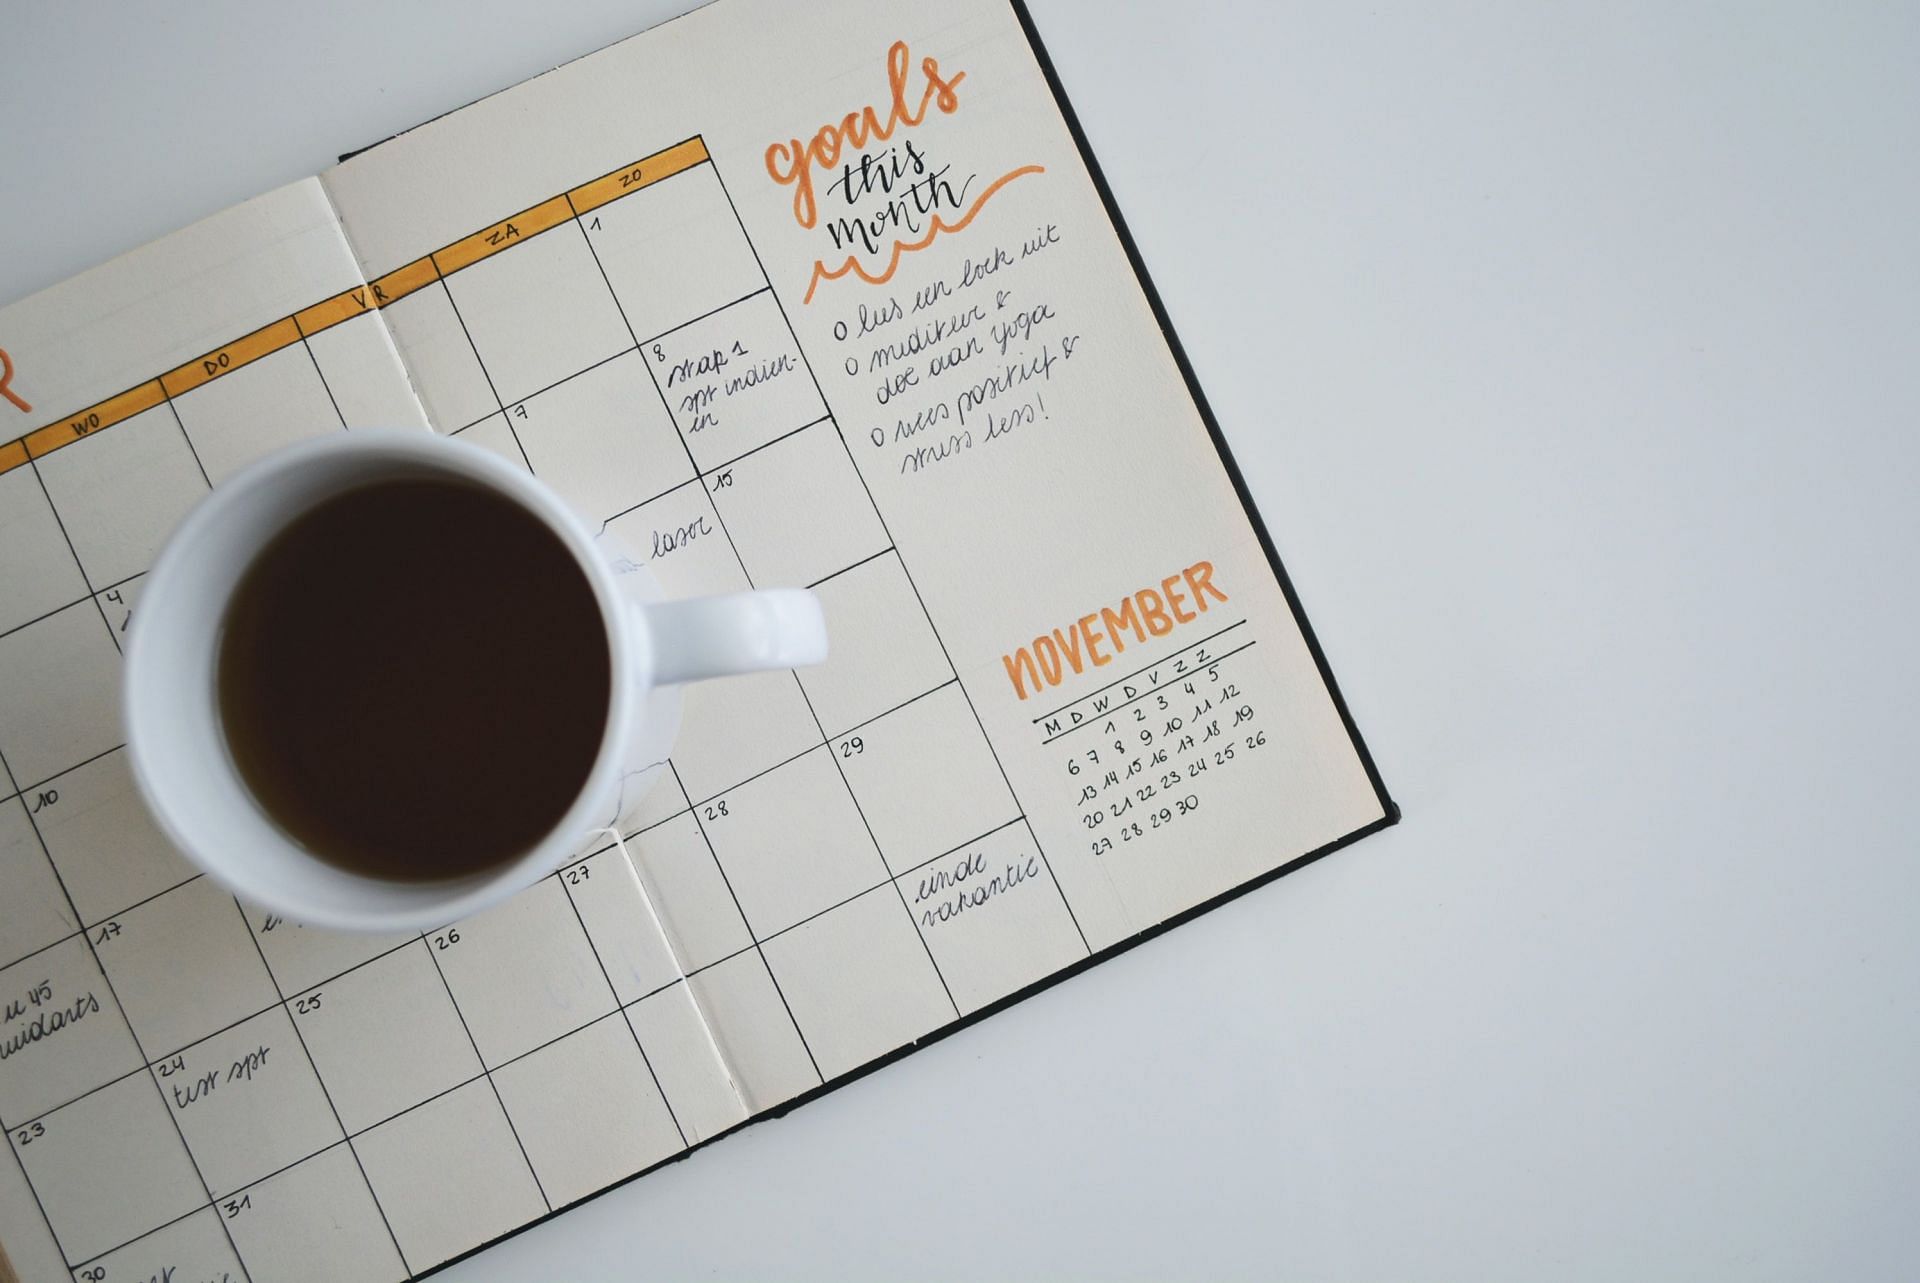 Creating your own schedule (Image via Unsplash/Estee Janssens)